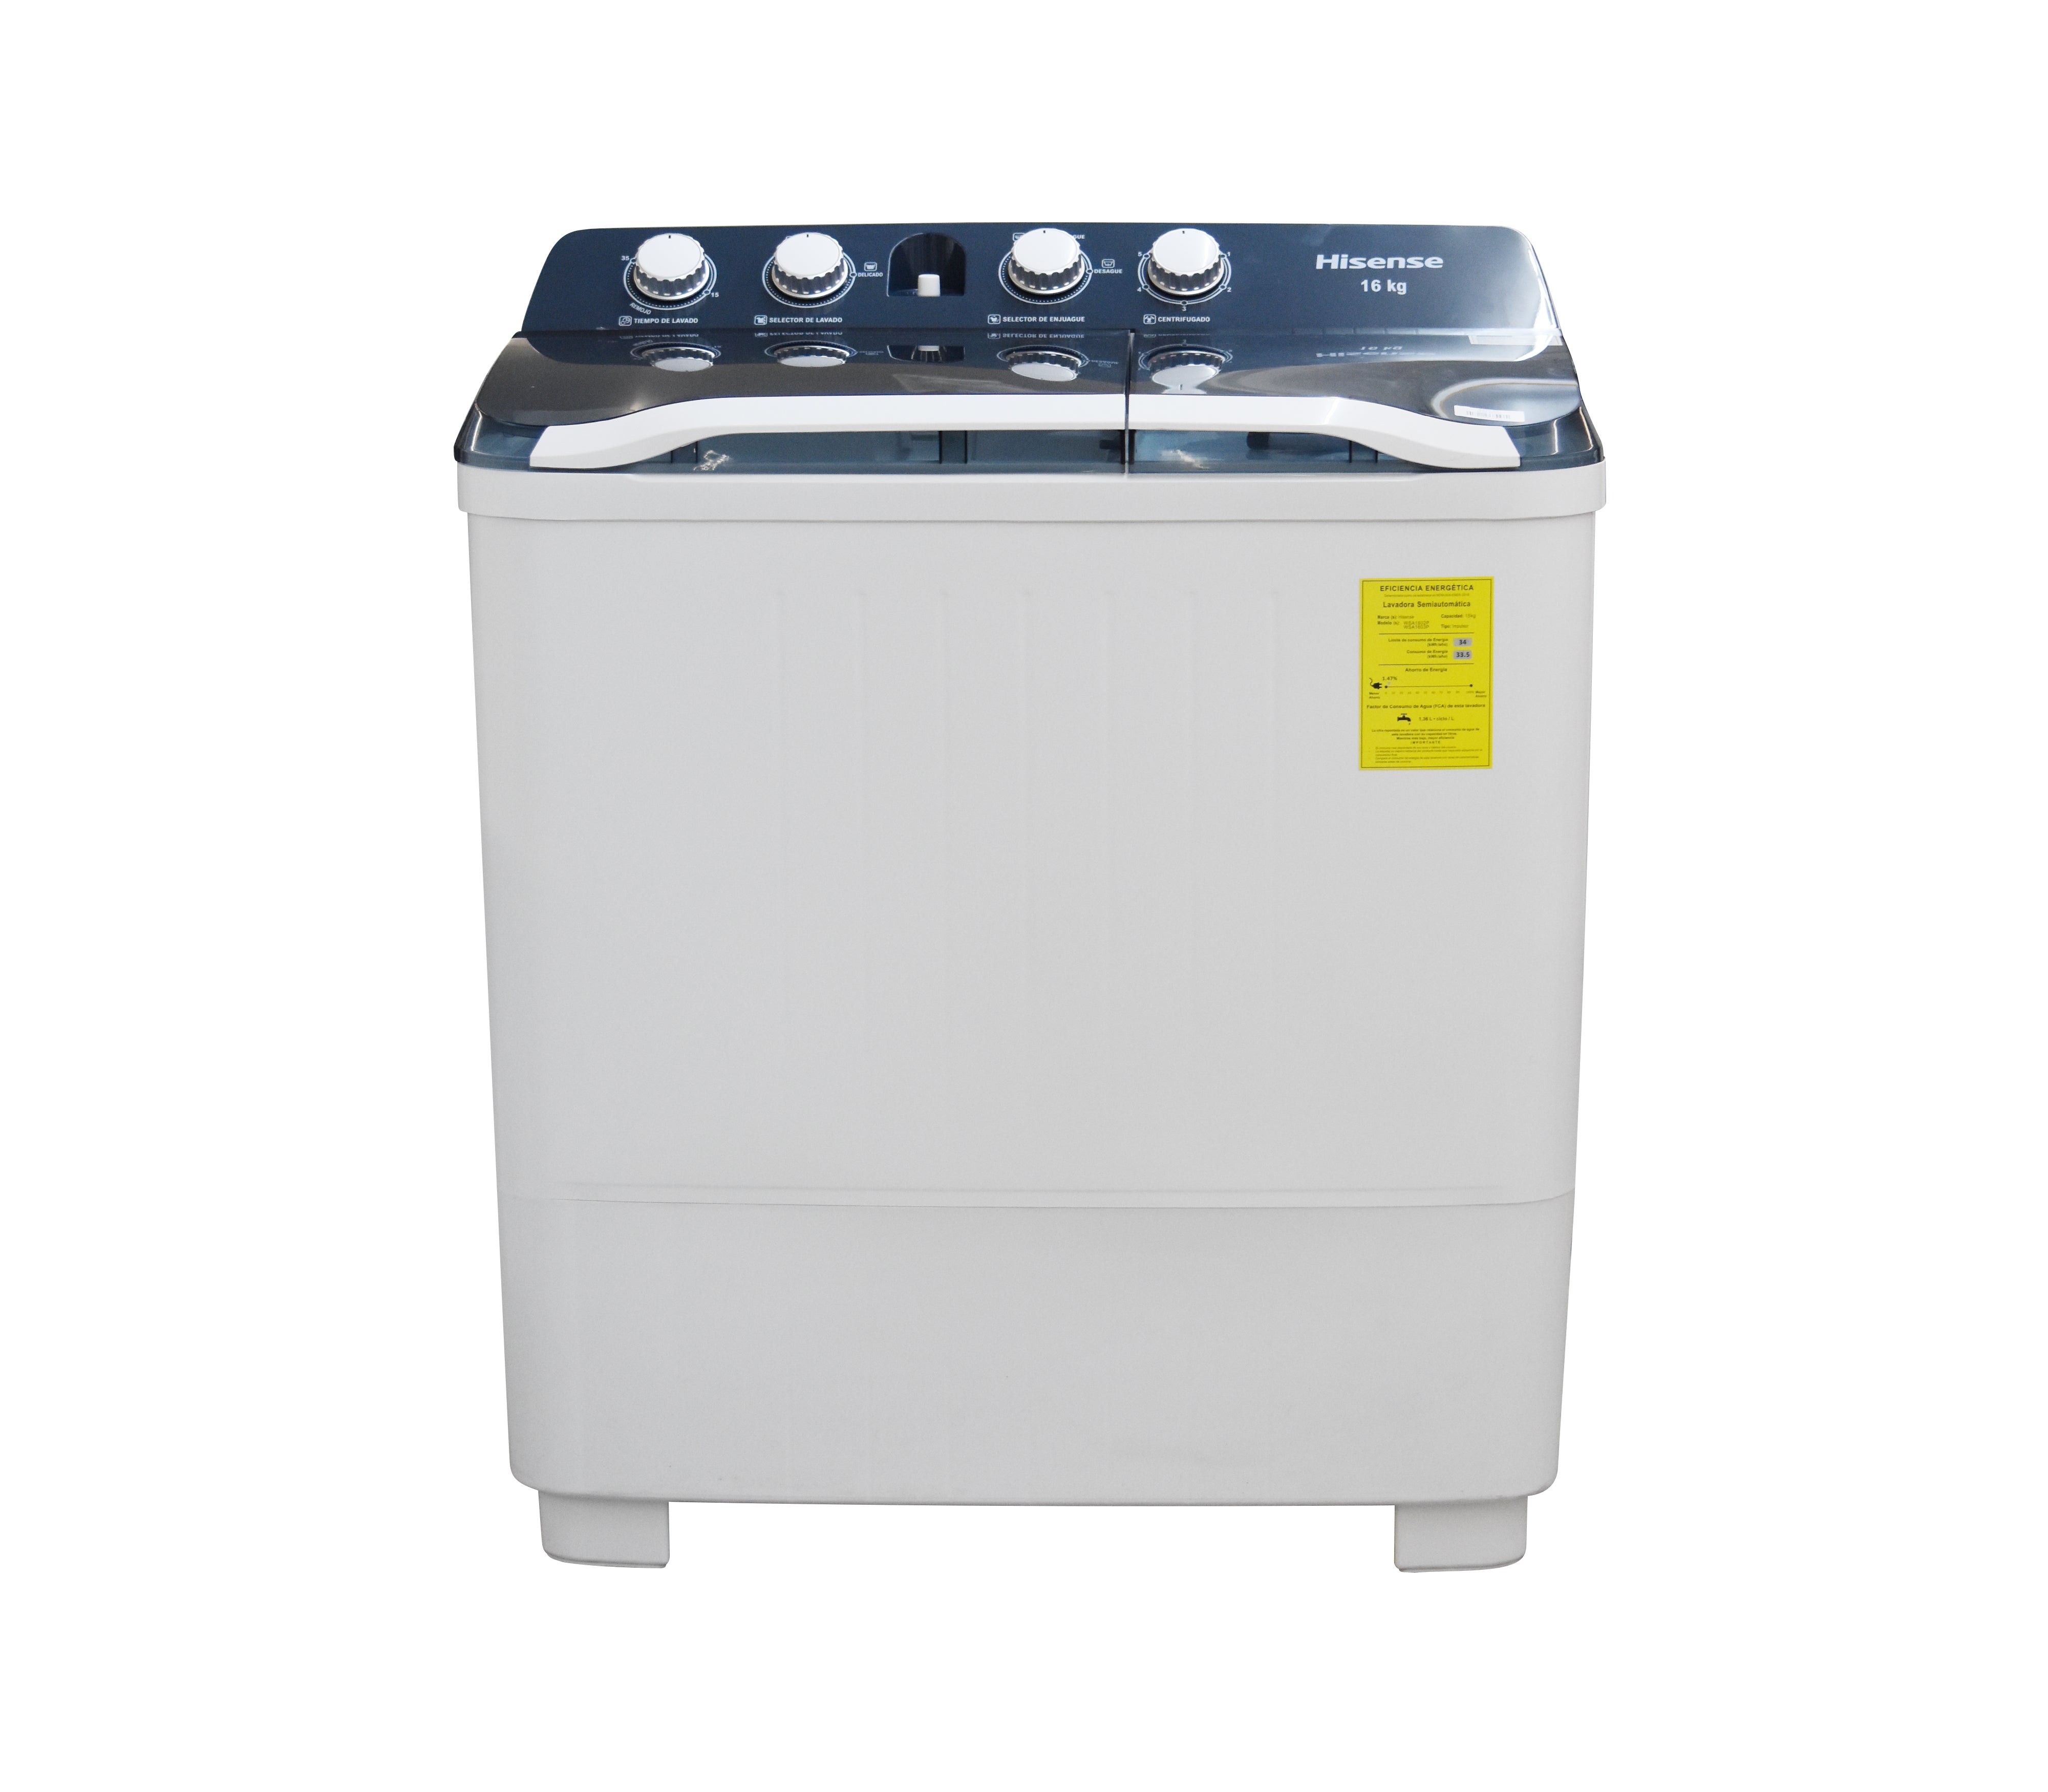 Lavadora semiautomática Doble tina / 10kg - Condesa